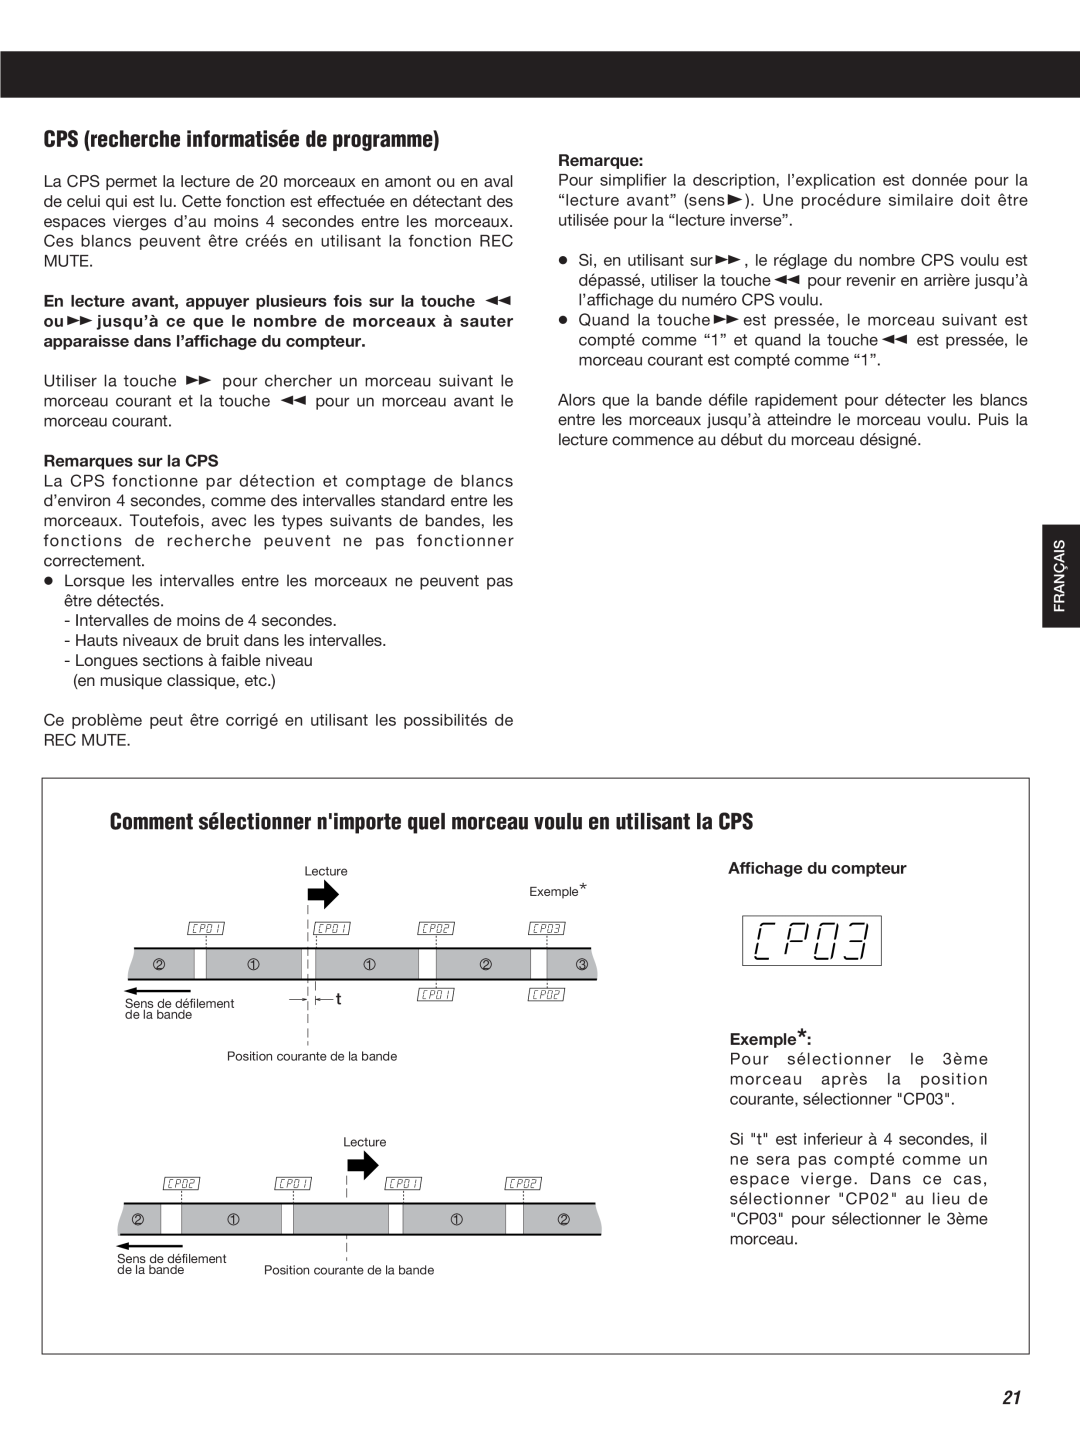 Teac W-860R owner manual CPS recherche informatisée de programme, Remarques sur la CPS, Affichage du compteur Exemple 